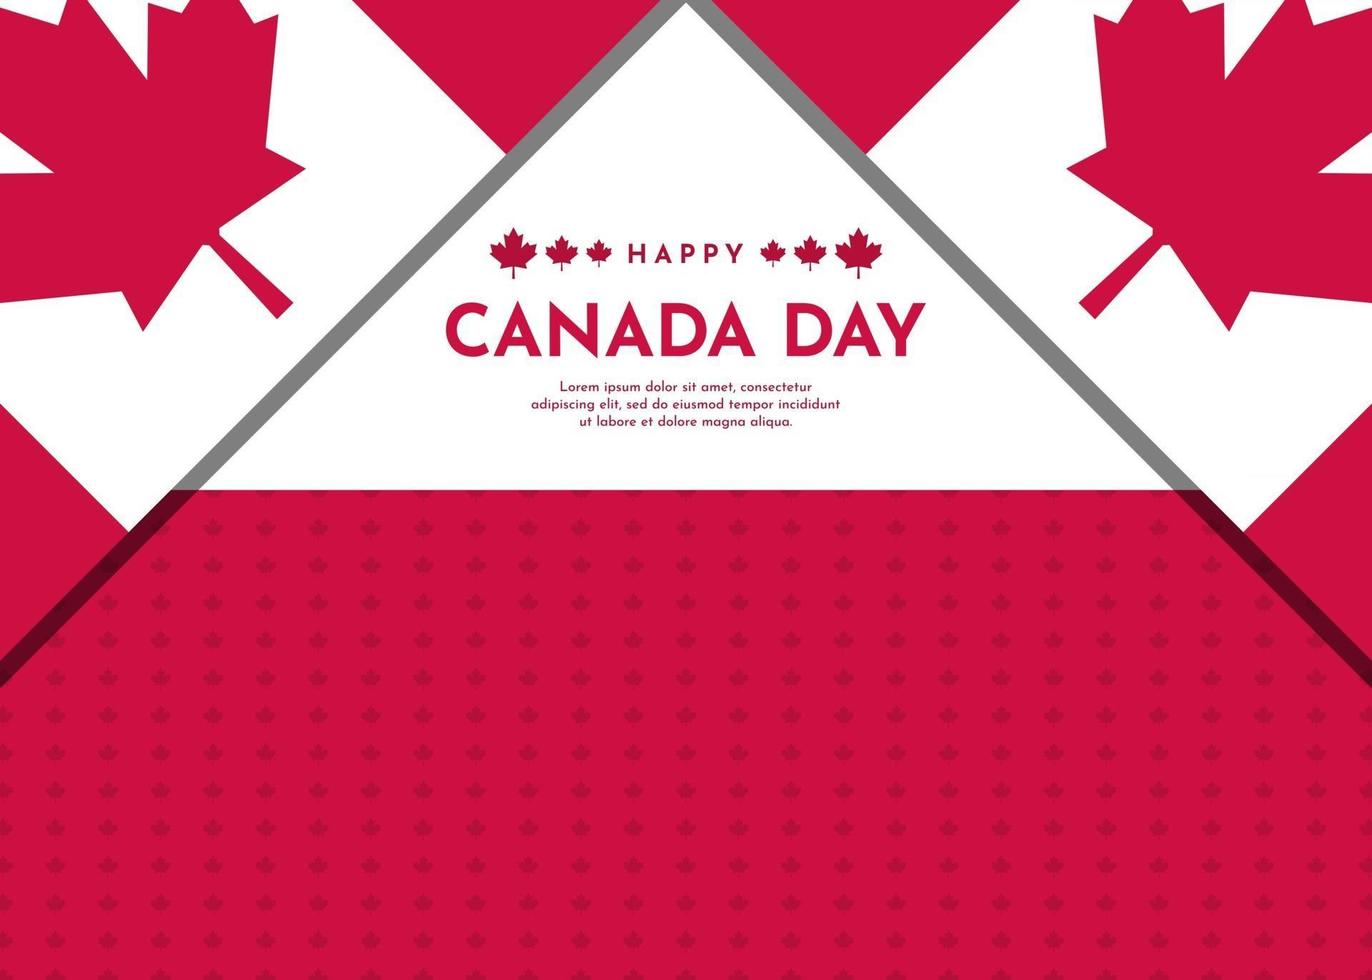 Kanada-Tagesfeierhintergrund mit Ahornblattdesign vektor